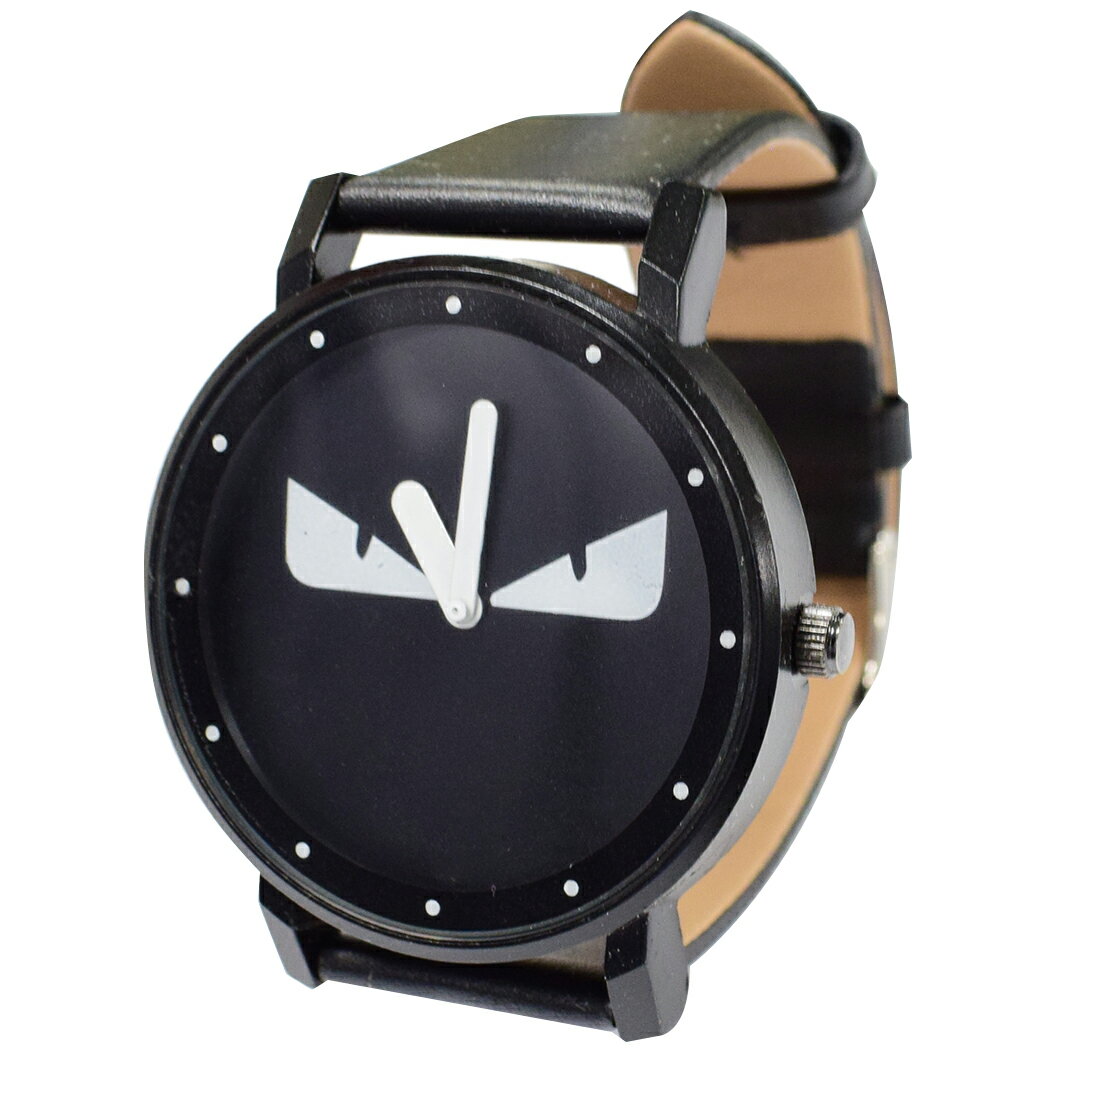 腕時計 ユニセックス モンスターデザイン レディース CM14 Uレザー革 アクセサリー ブラック×ブラック 【代引き不可】